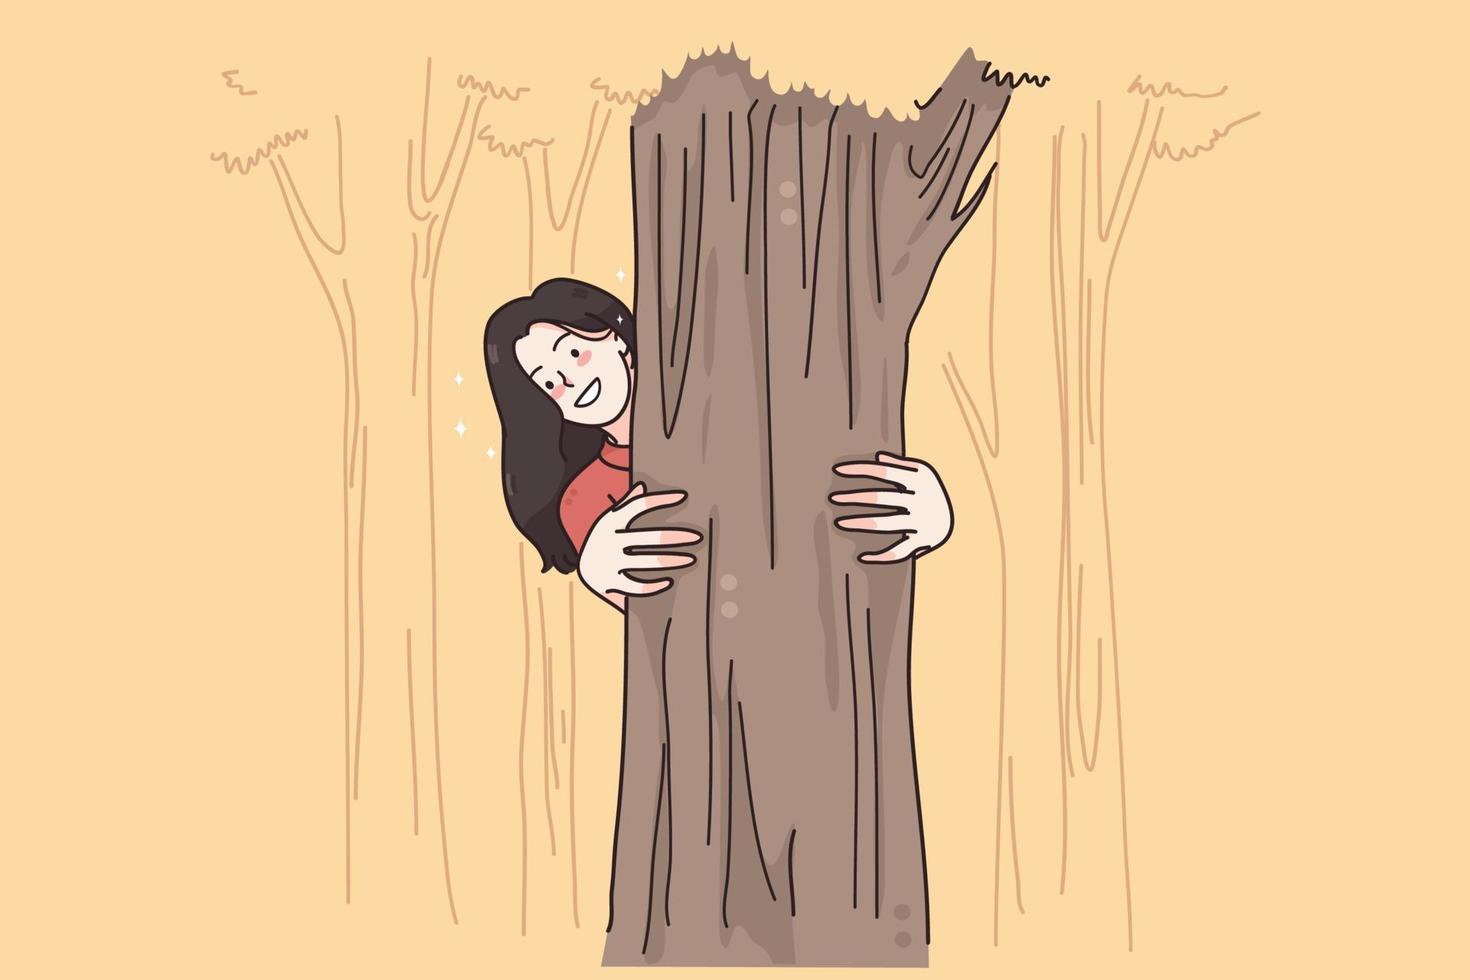 actividades de verano y concepto de ocio. joven personaje de dibujos animados femenino sonriente abrazando y mirando desde un árbol en el parque o bosque sintiéndose activo y juguetón ilustración vectorial vector